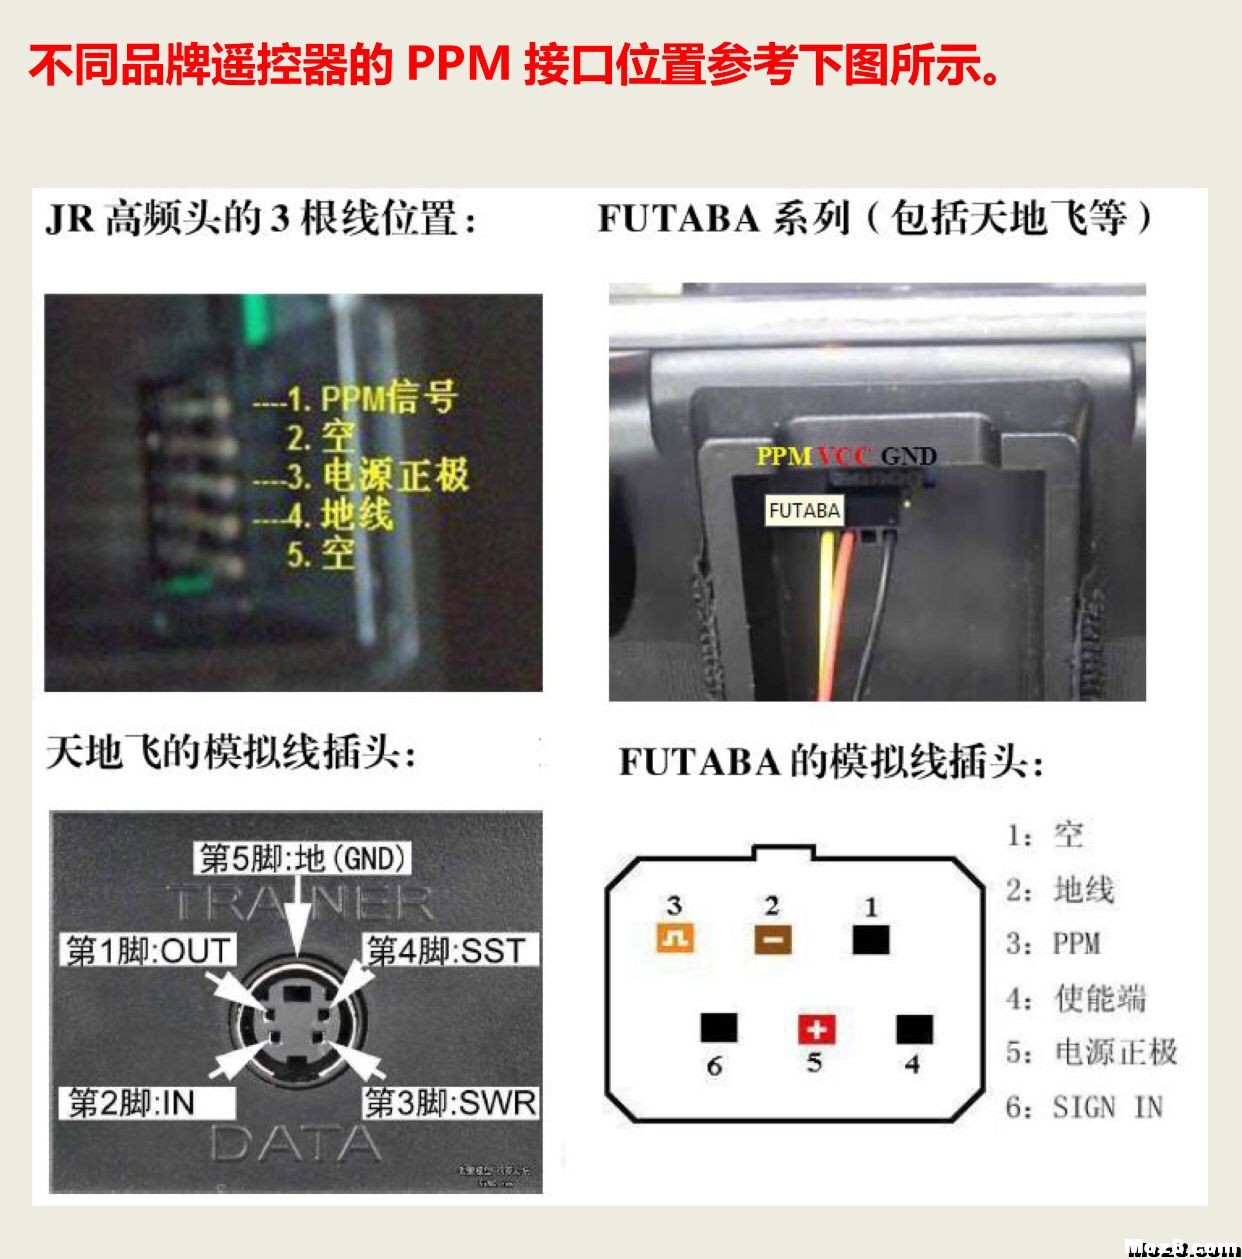 不同遥控器PPM接口位置对比图 遥控器 作者:飞将军 3393 